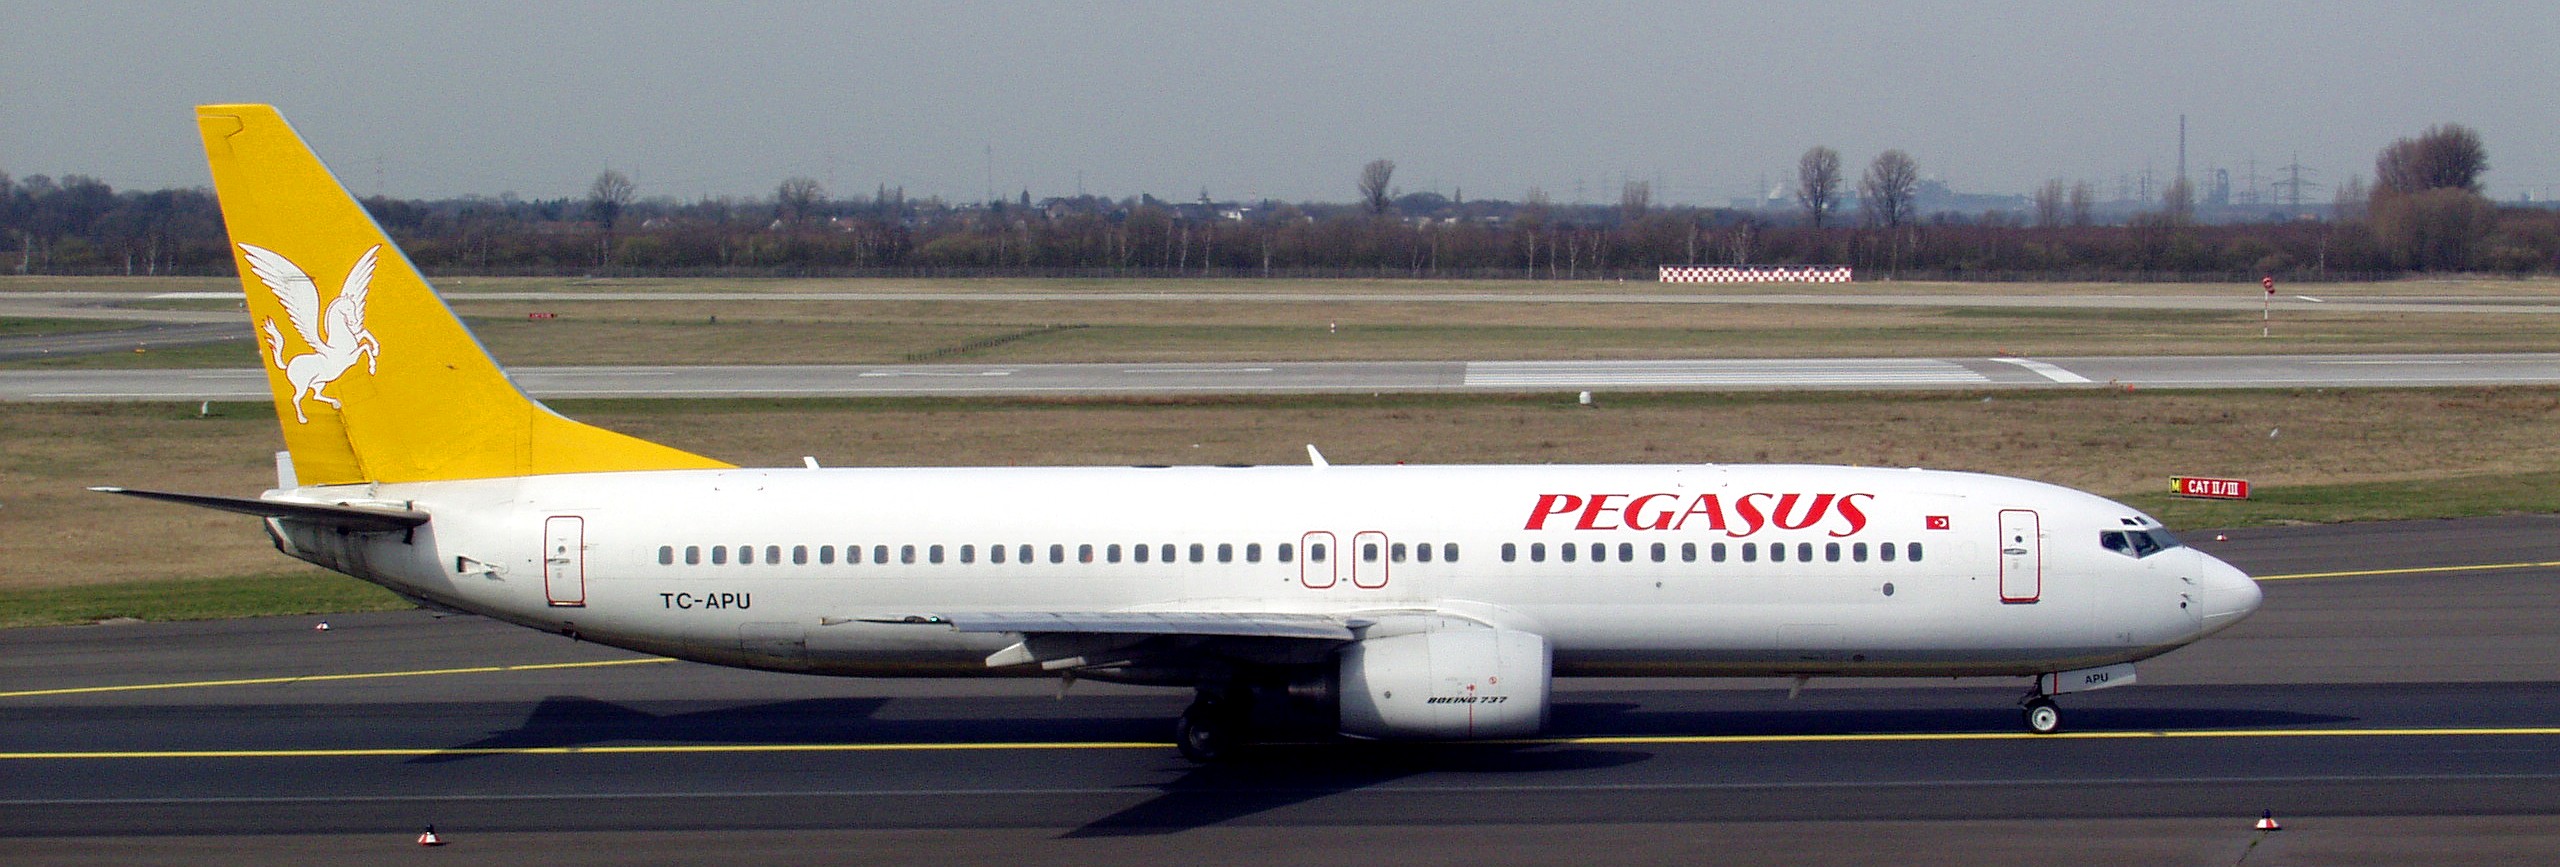 Avion Pegasus Airlines (Pegasus Airlines). Sayt.2 officiel